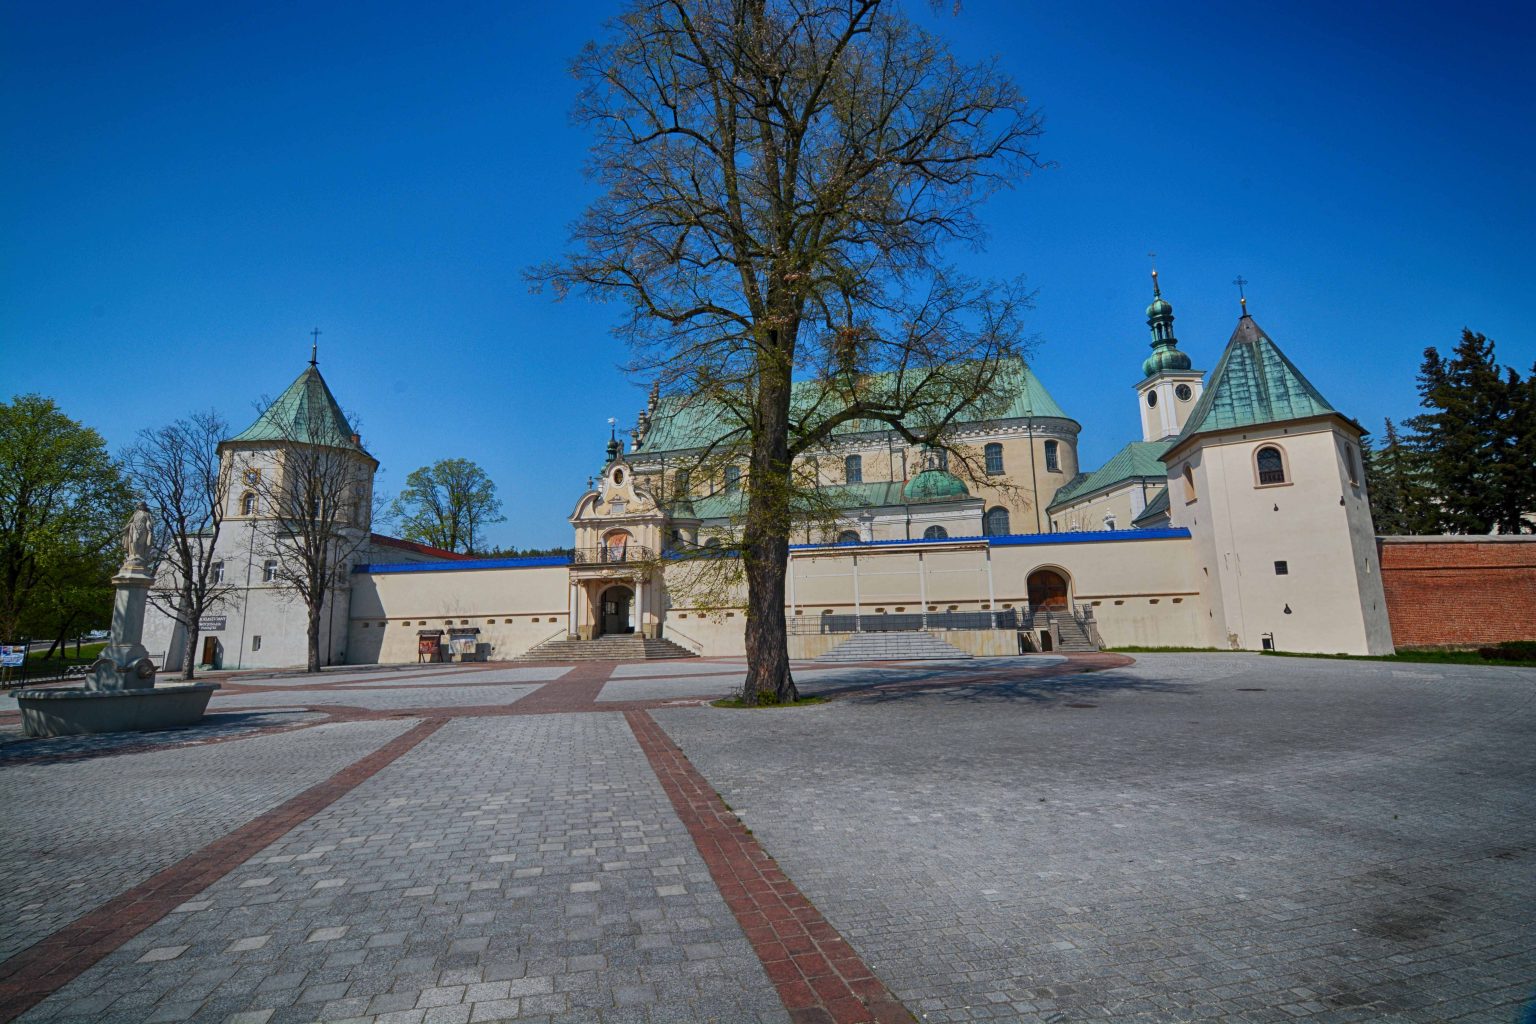 le-ajsk-zesp-klasztoru-oo-bernardyn-w-polskie-pomniki-historii